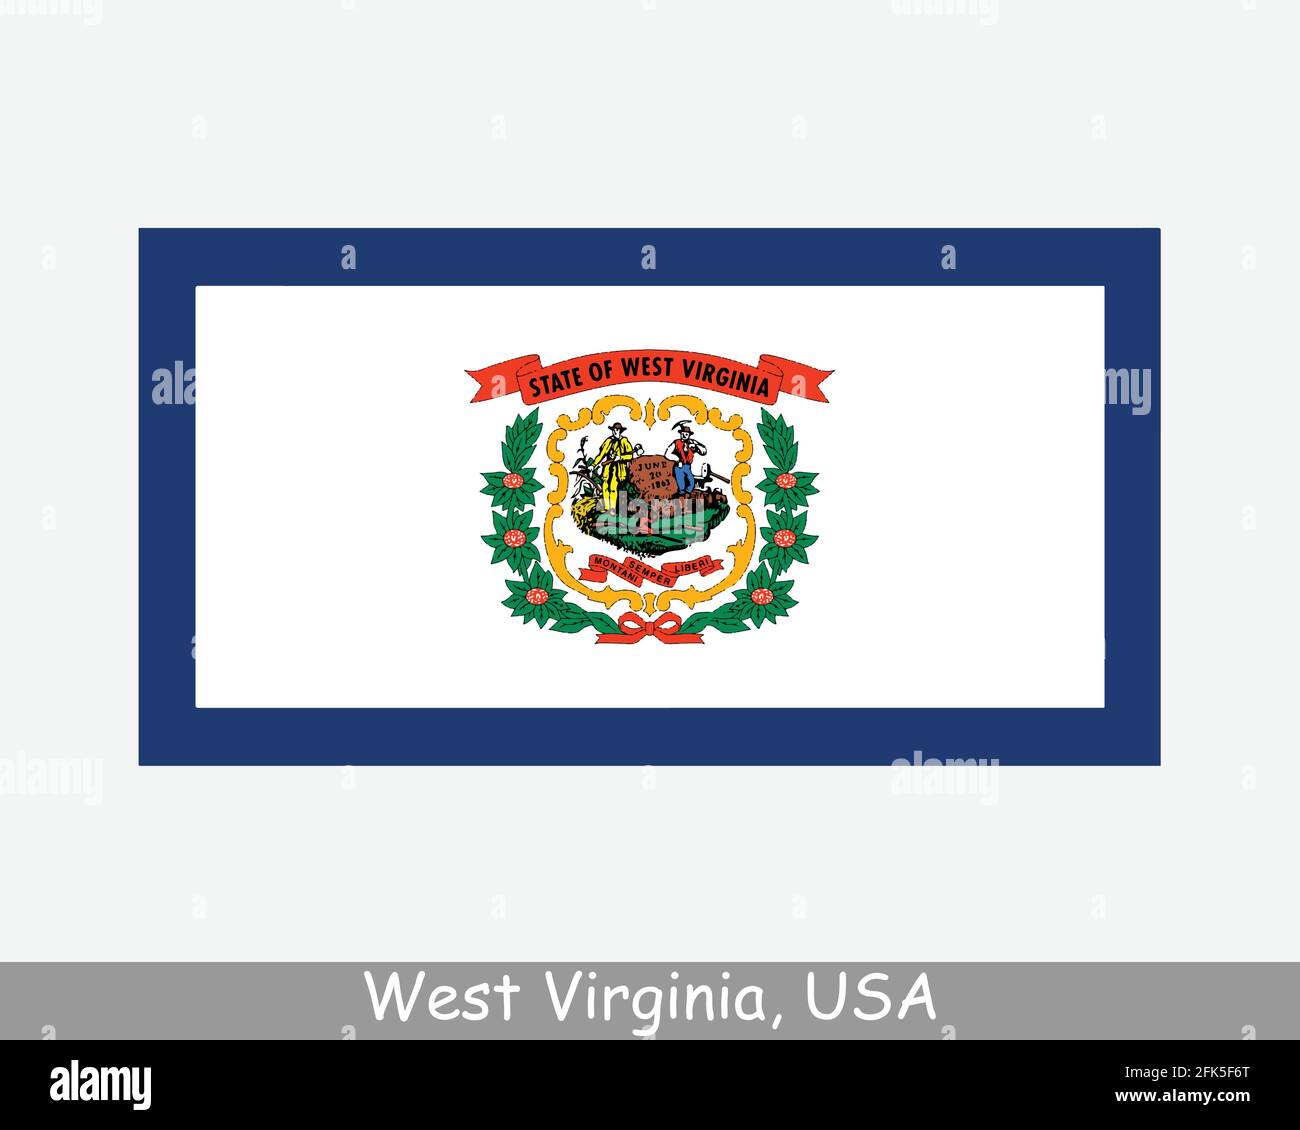 West Virginia USA Staatsflagge. Flagge von WV, USA isoliert auf weißem Hintergrund. Vereinigte Staaten, Amerika, American, Vereinigte Staaten von Amerika, US-Bundesstaat. Vect Stock Vektor